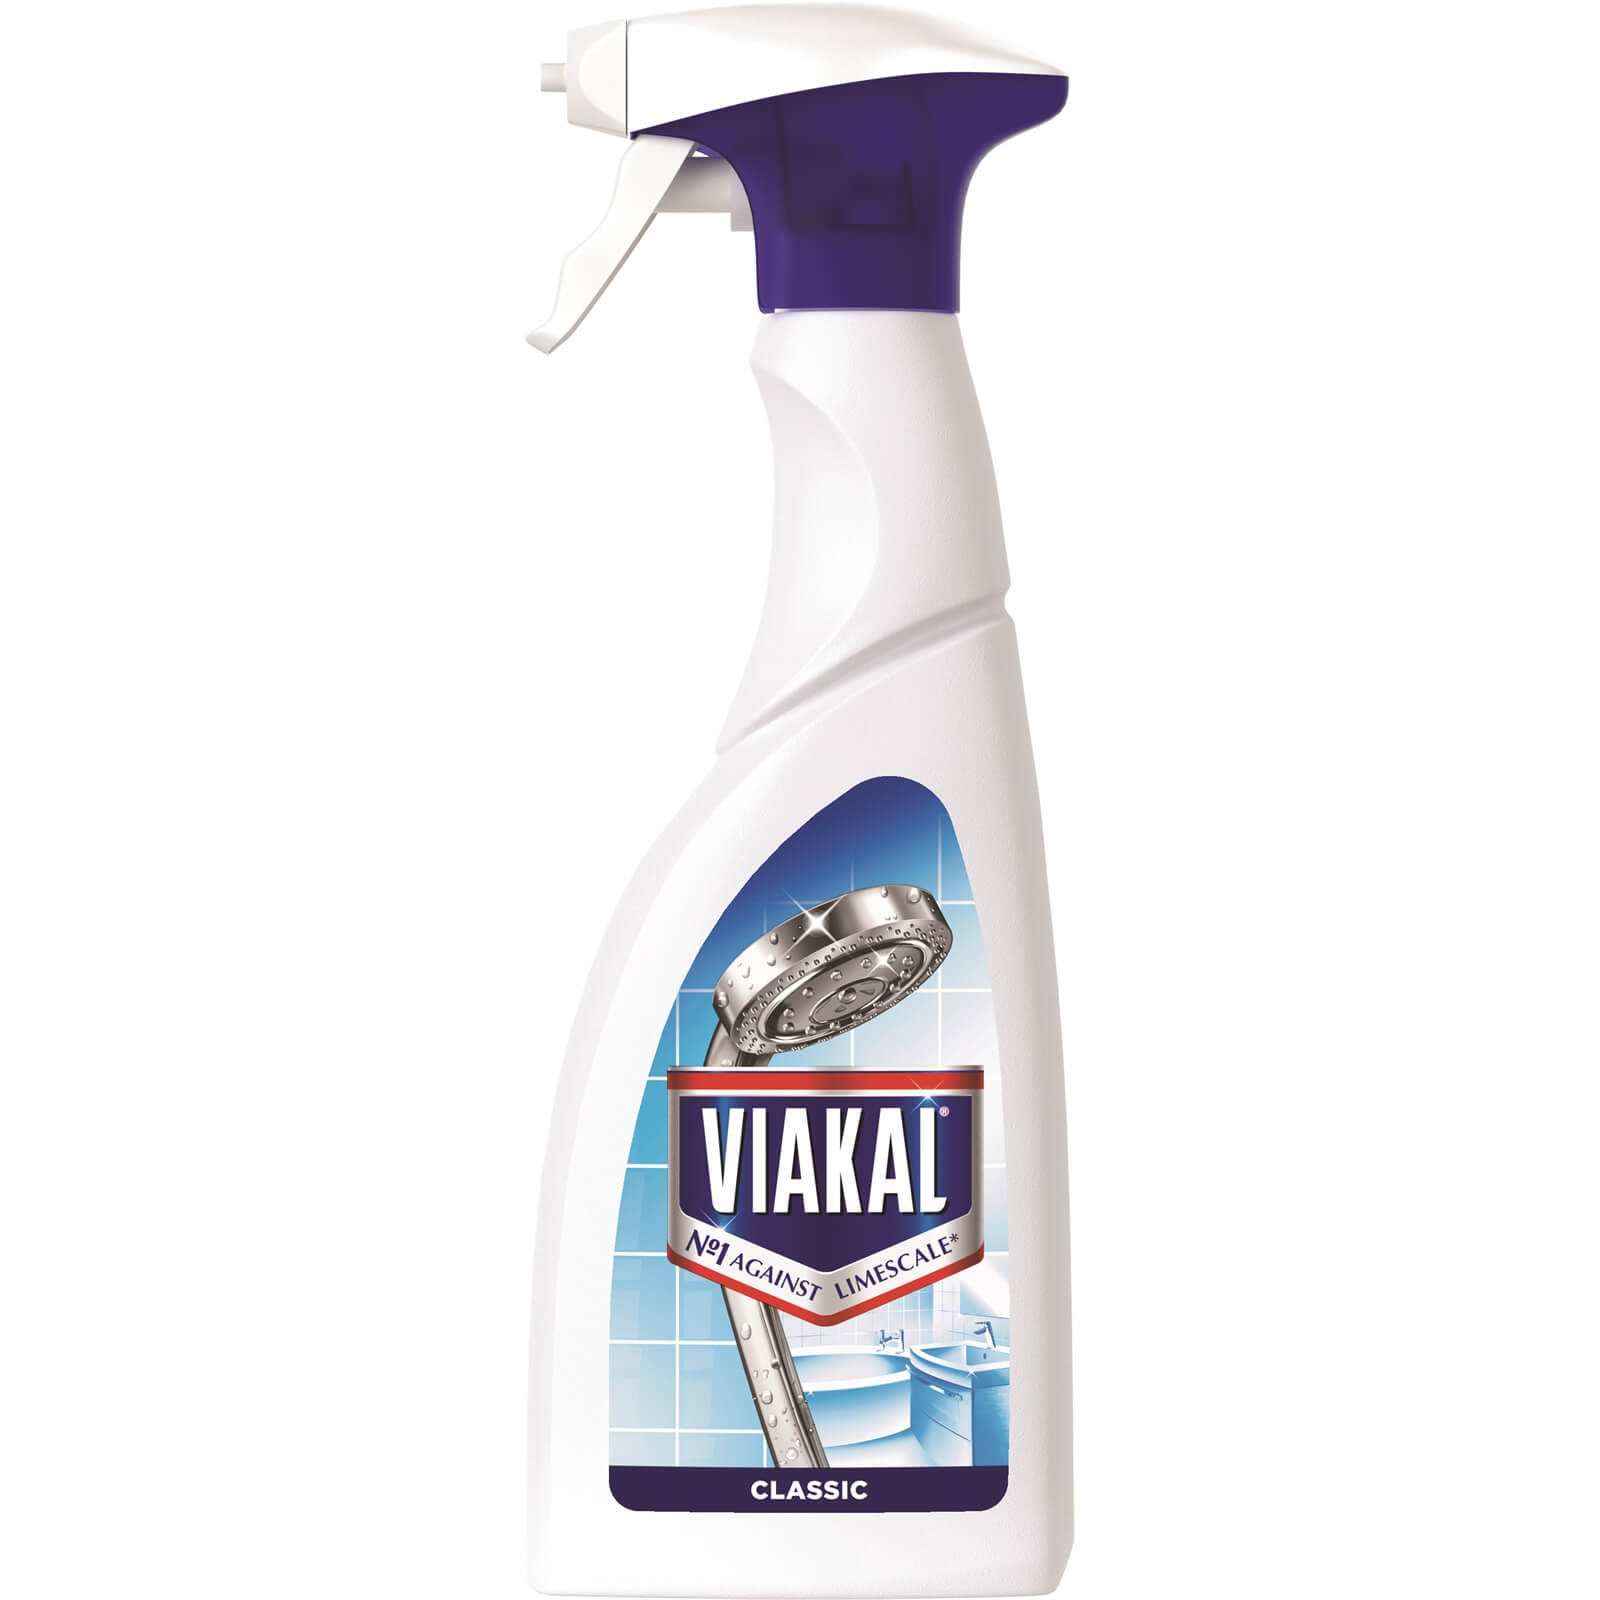 Viakal Original Spray